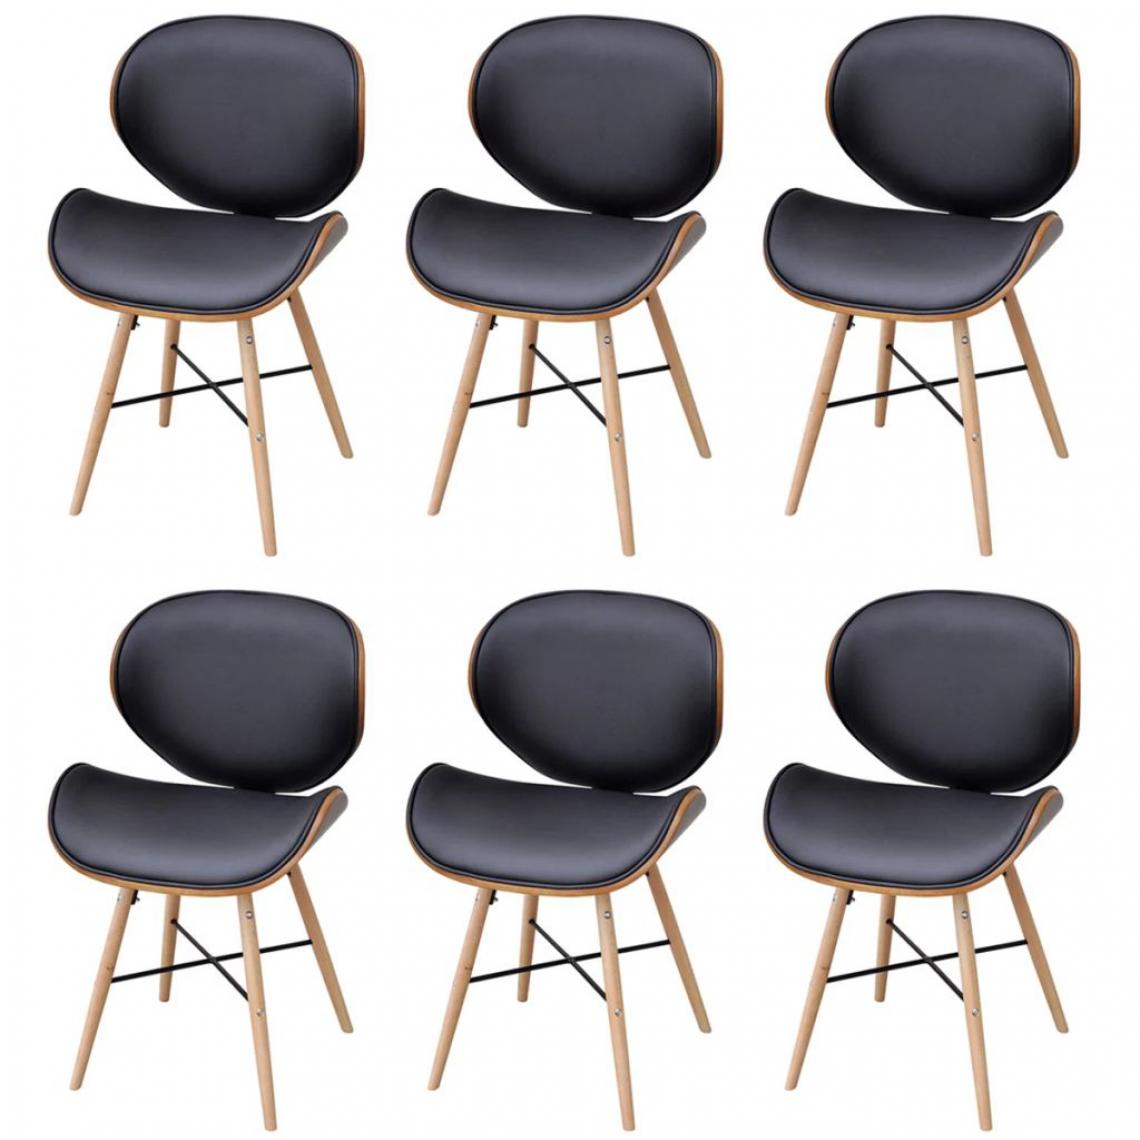 Icaverne - Moderne Fauteuils selection Buenos Aires 6 chaises sans accoudoirs avec cadre en bois cintré - Chaises